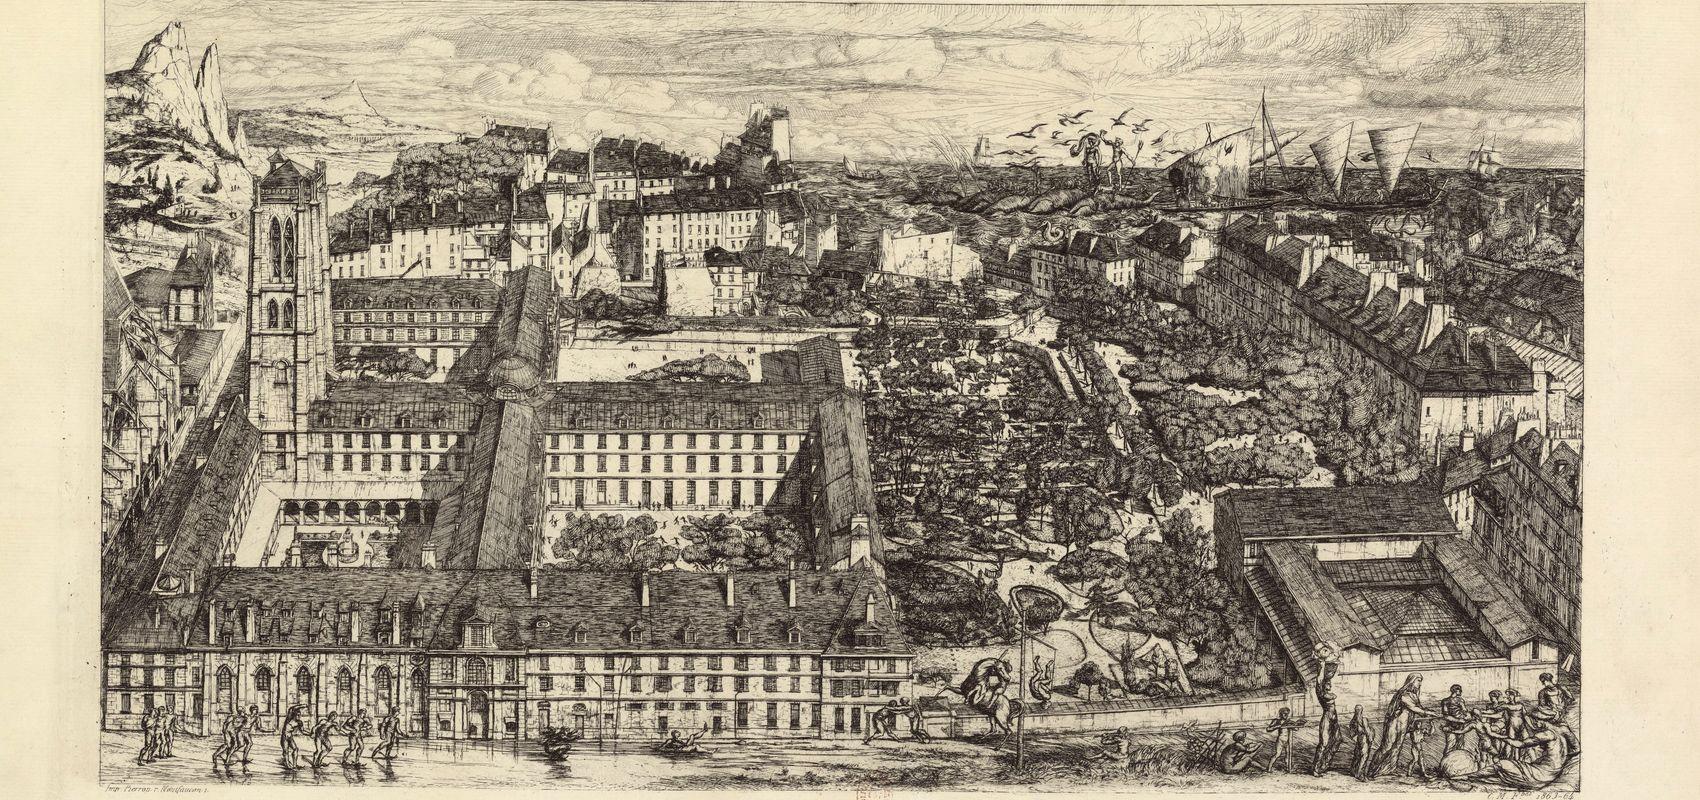 Collège Henri IV ou Lycée Napoléon avec ses dépendances et constructions voisines par Charles Meryon - 1864 - BnF, département des Estampes et de la photographie